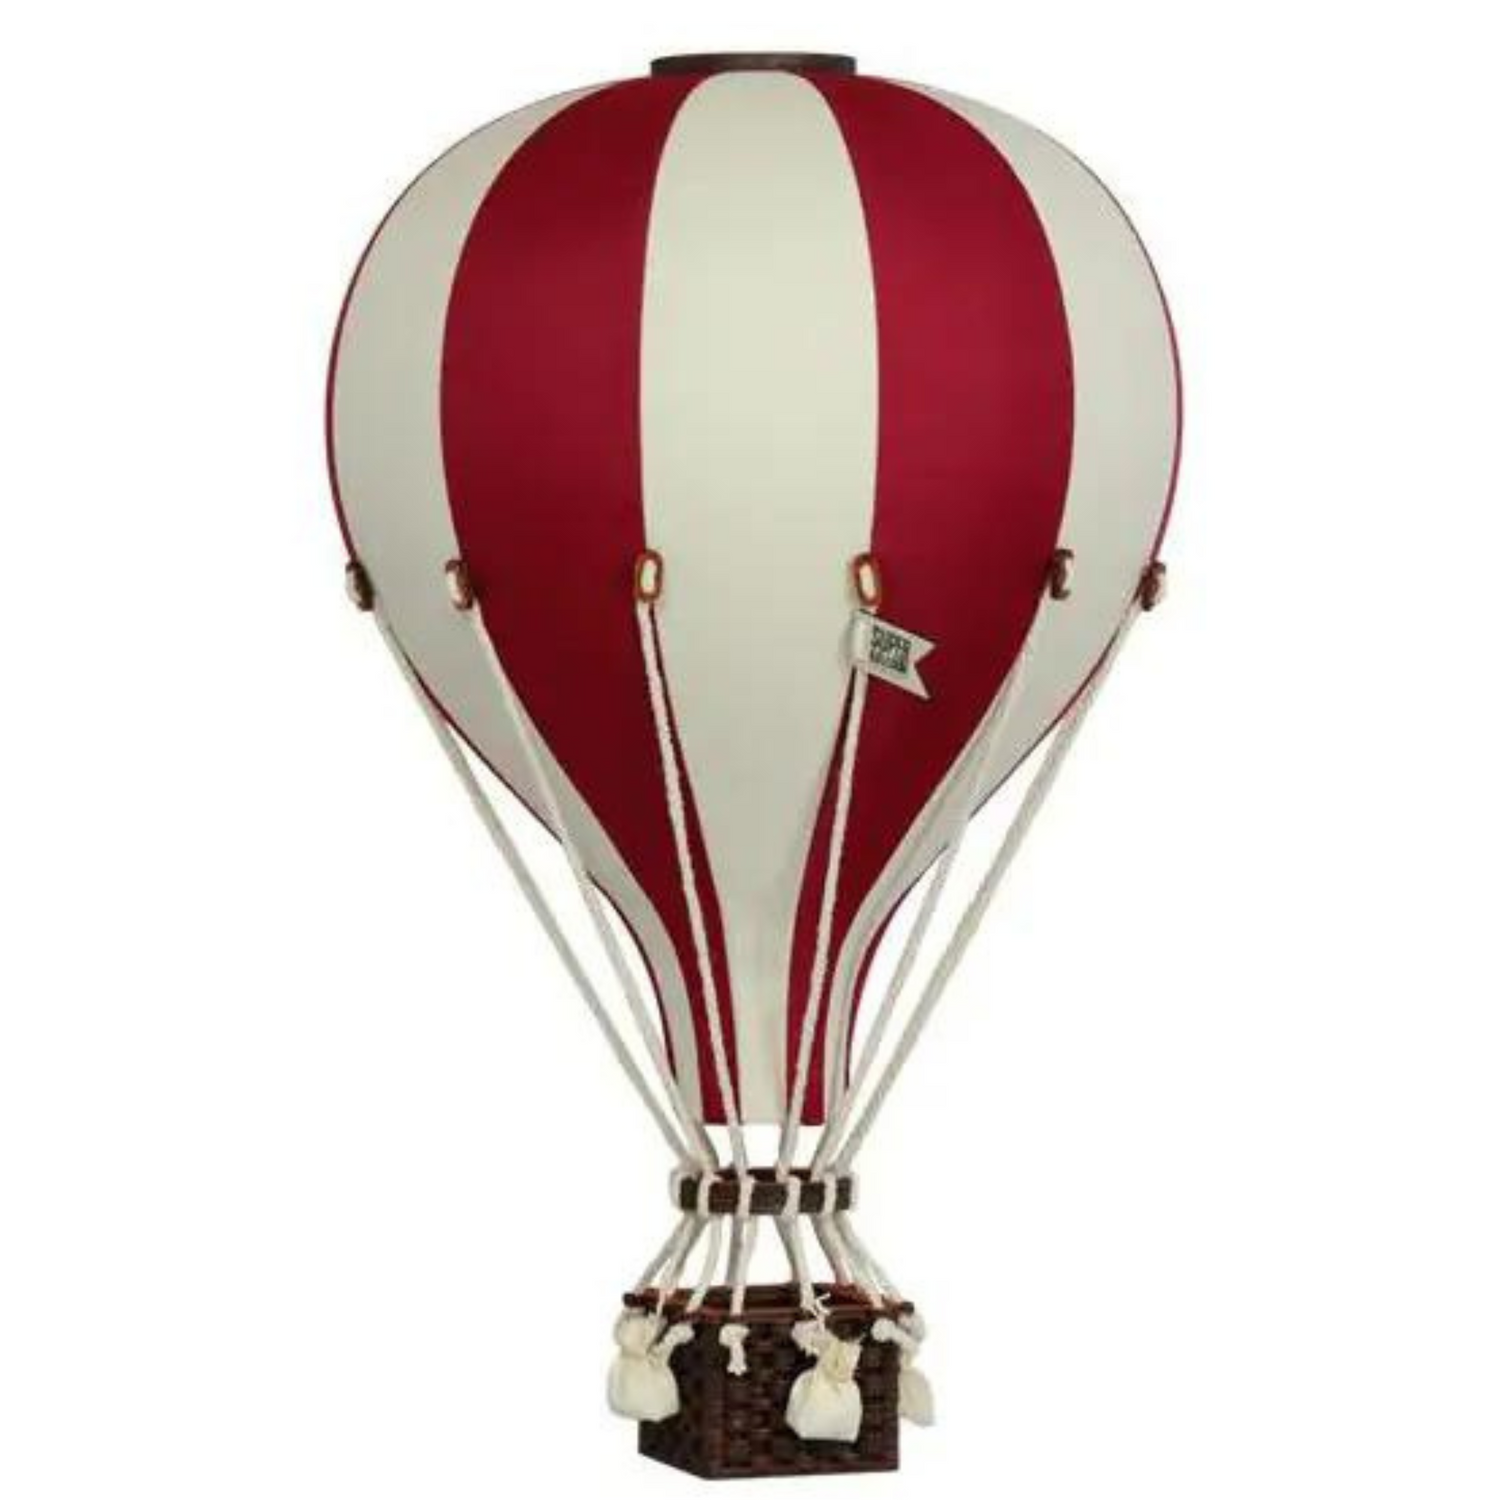 Super Balloon air balloon - White | Ed